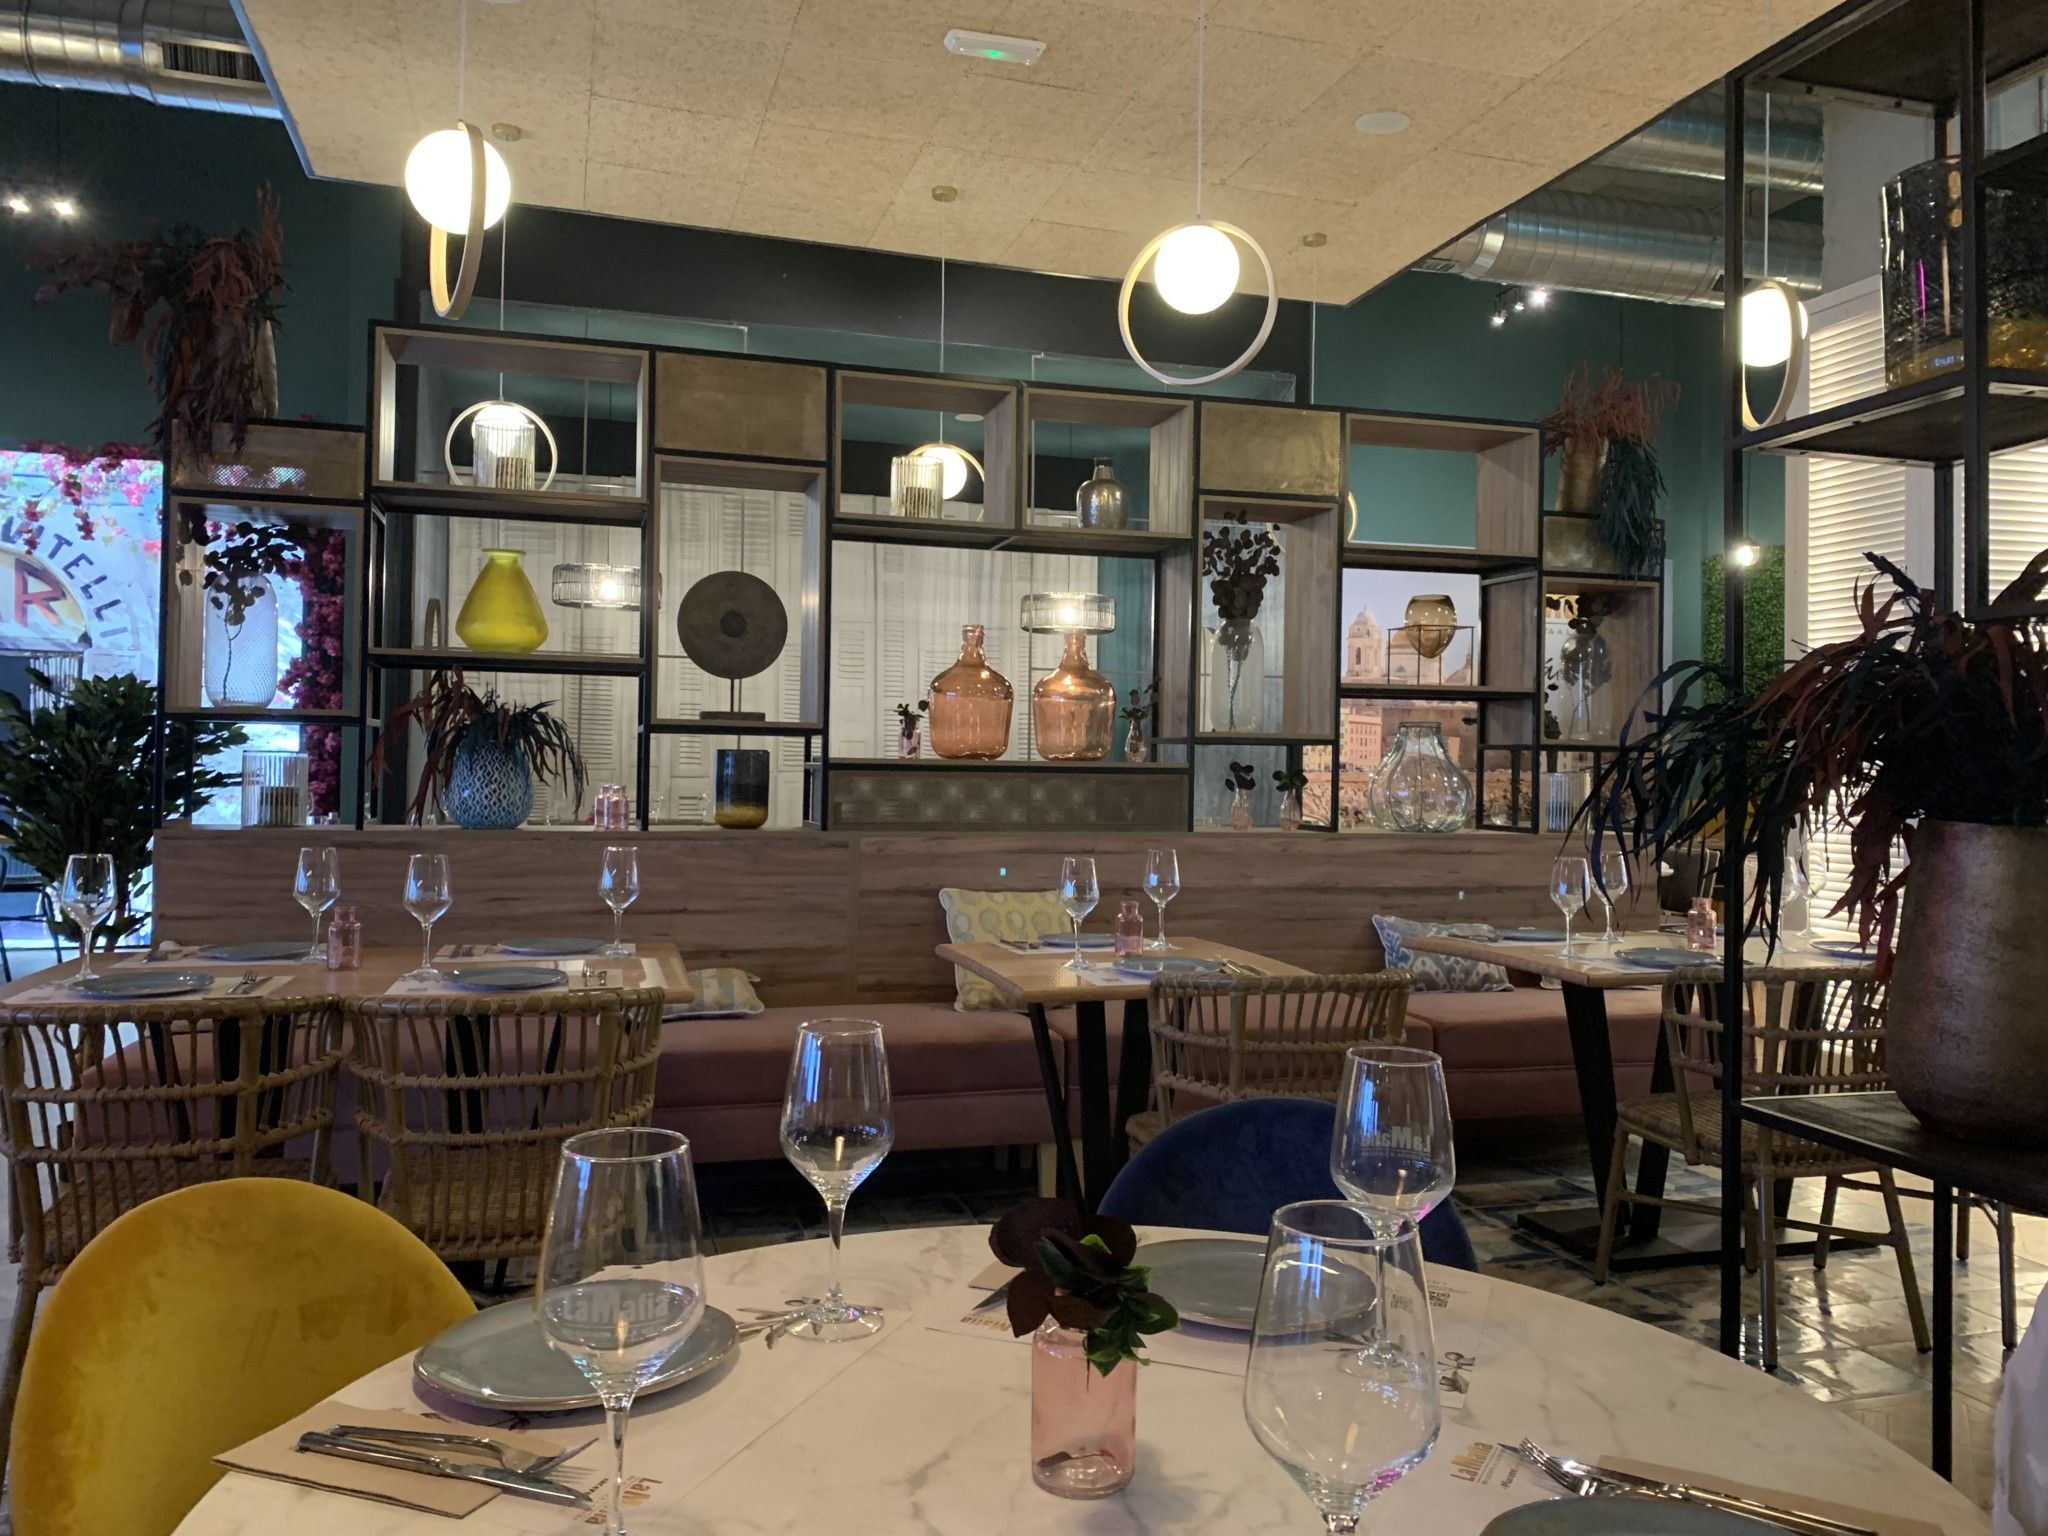 La cadena de restauración italiano-mediterránea  'La Mafia se sienta a la mesa' inauguró el pasado día 30 hoy su segundo restaurante en la ciudad de Cádiz, siendo Andalucía la tercera comunidad en número de franquicias.